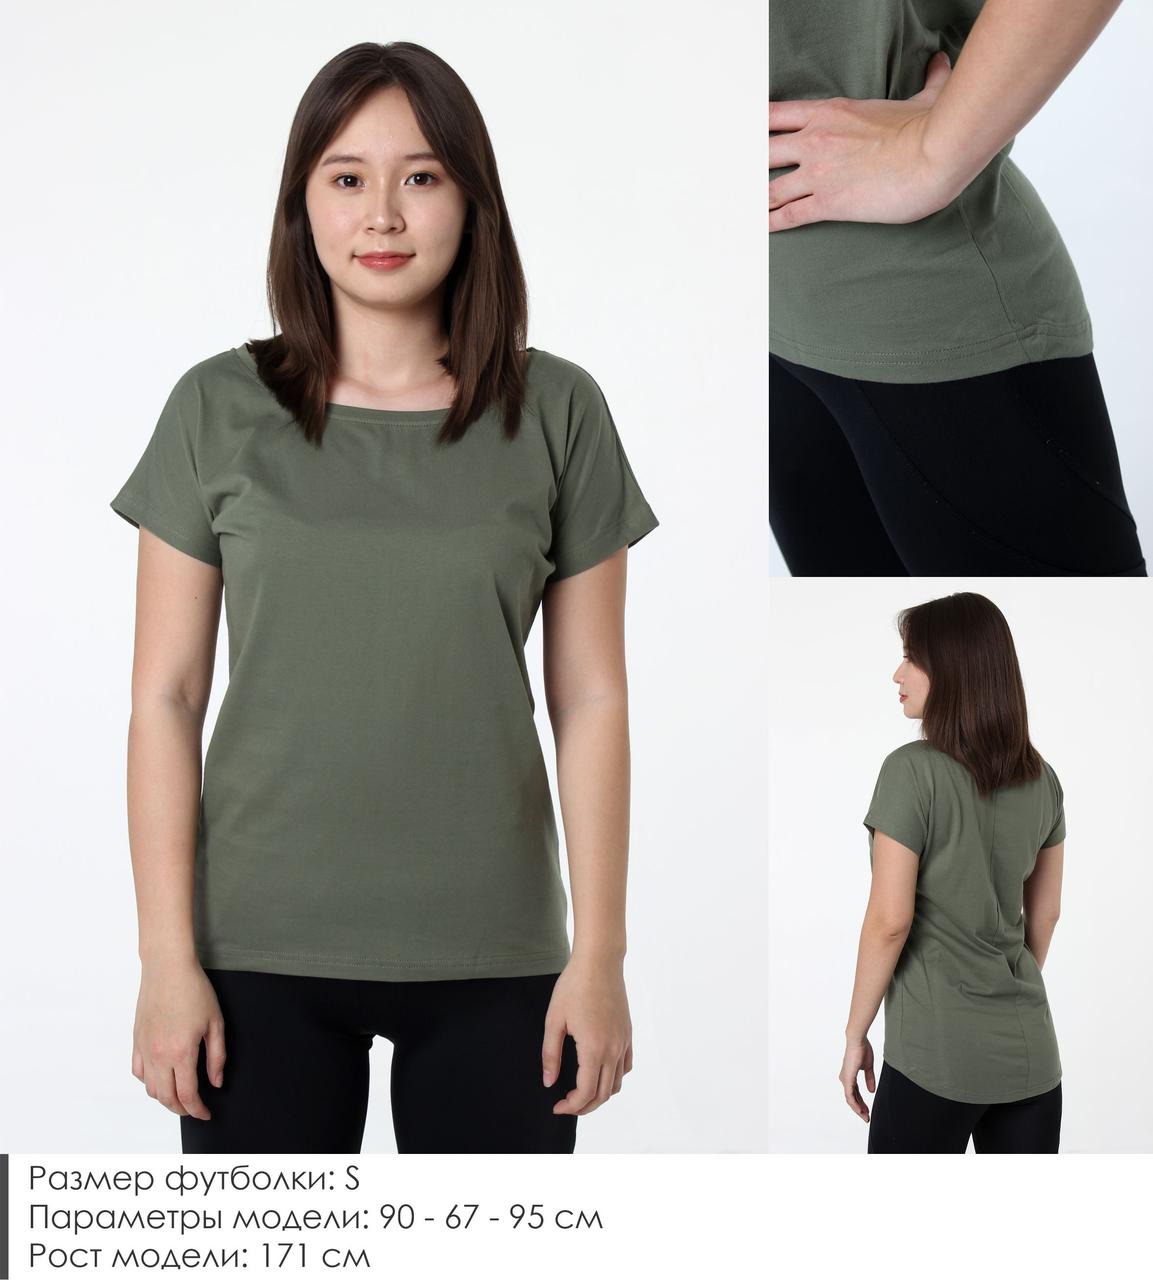 Удлиненная женская футболка из хлопка. Цвет: Хаки